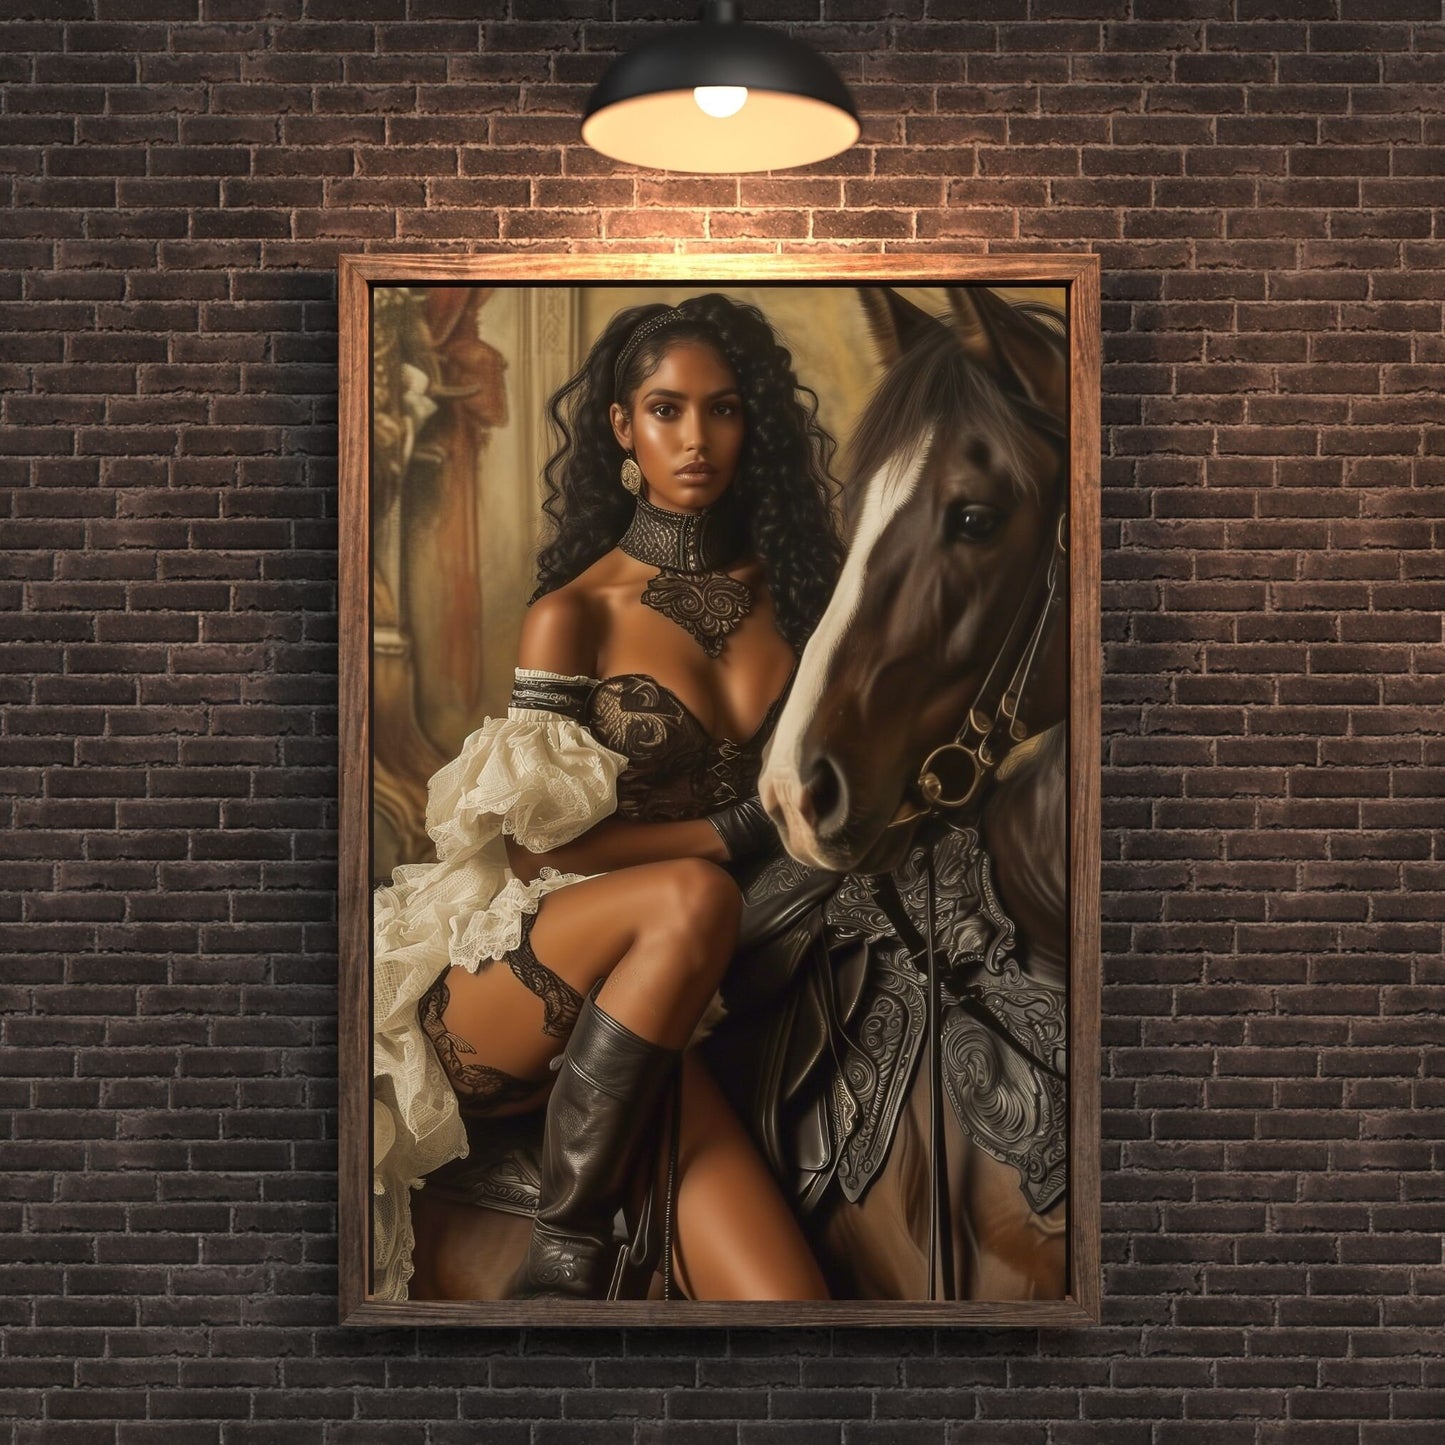 Mystical Equestrian  Beauty - Renaissance Digital Download - Wall Art - Instant Download - Digital Afro Futurism - Black AI Portraits